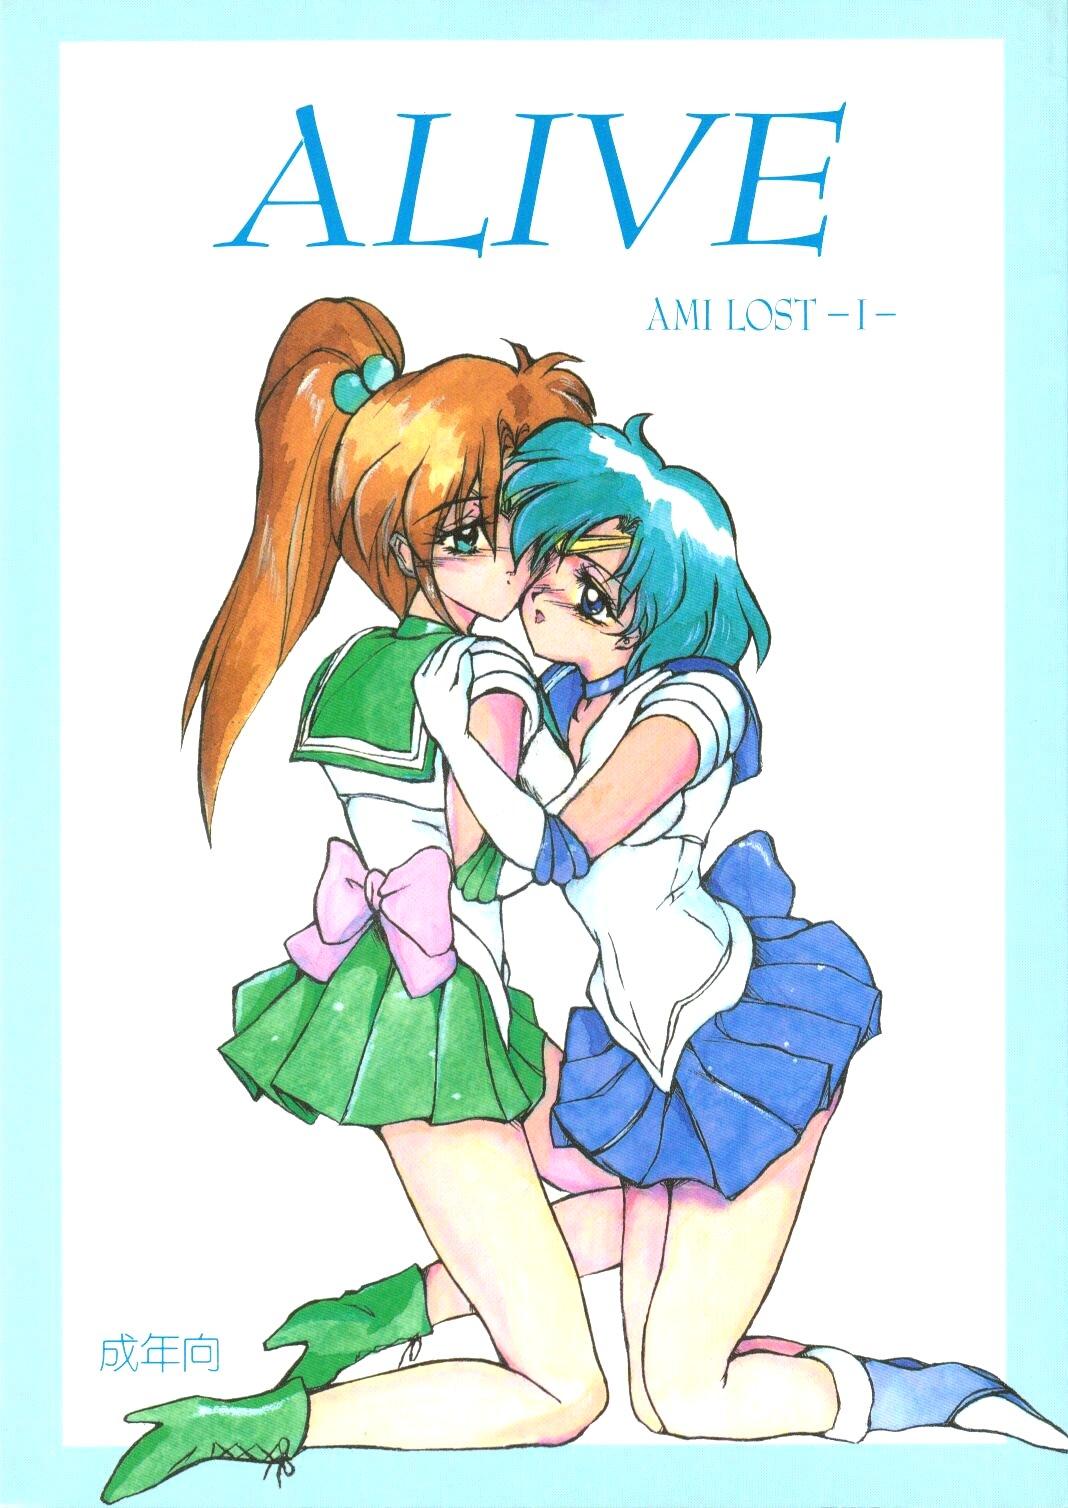 Ex Girlfriend ALIVE AMI LOST - Sailor moon Male - Picture 1